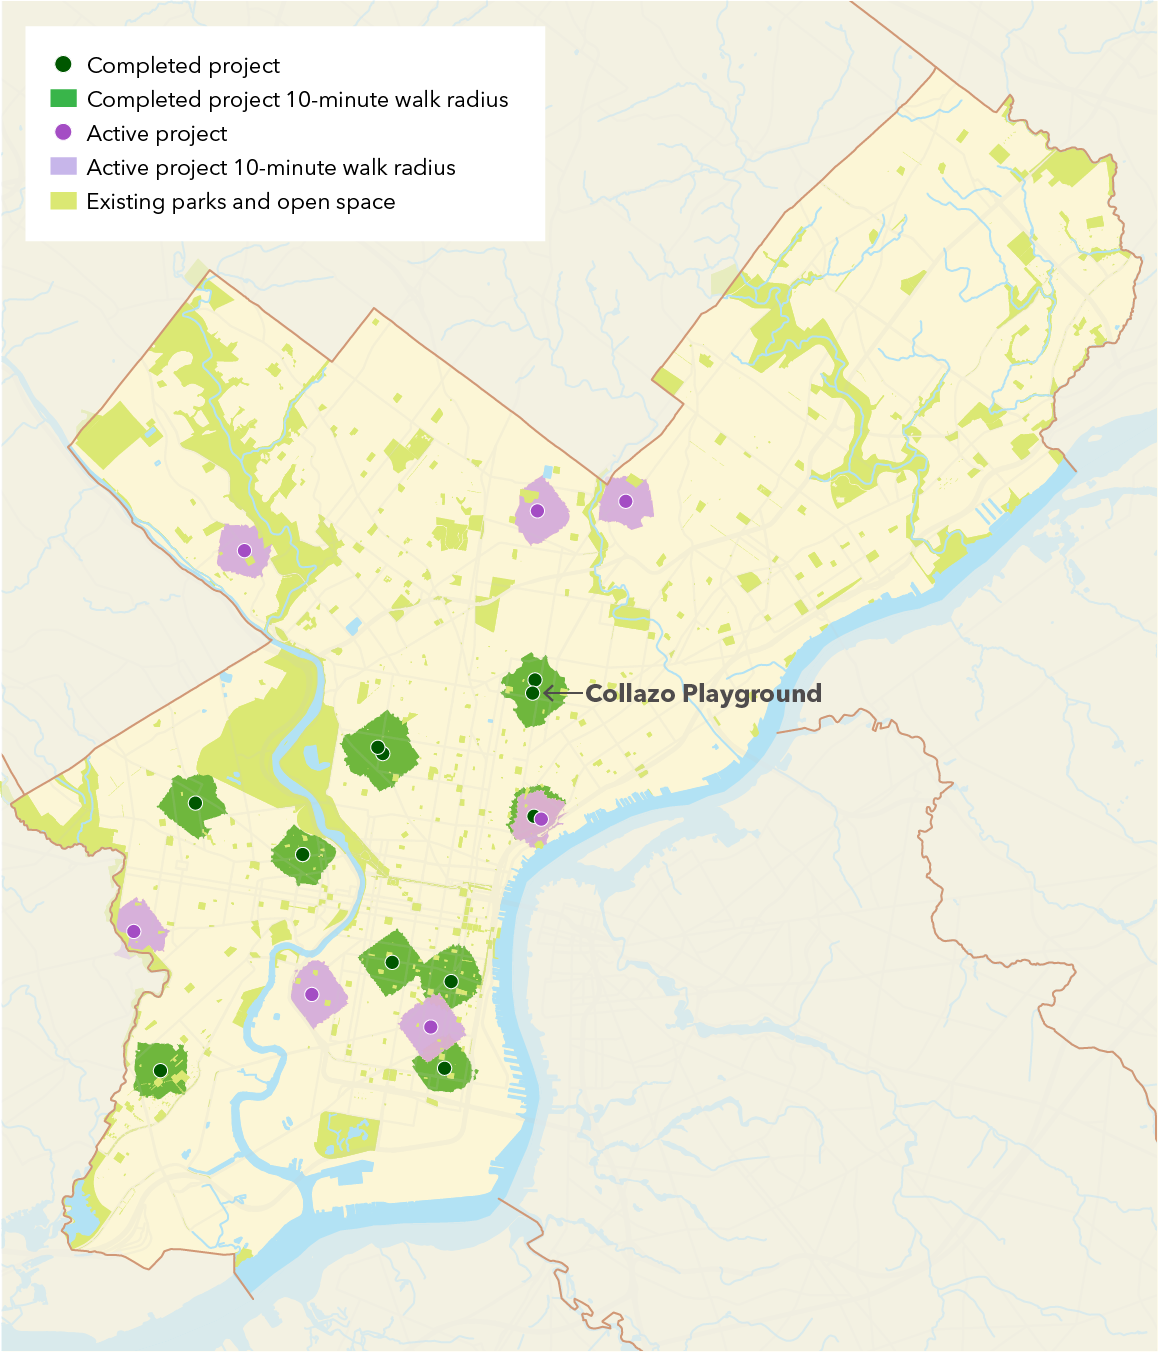 Map of Philadelphia parks